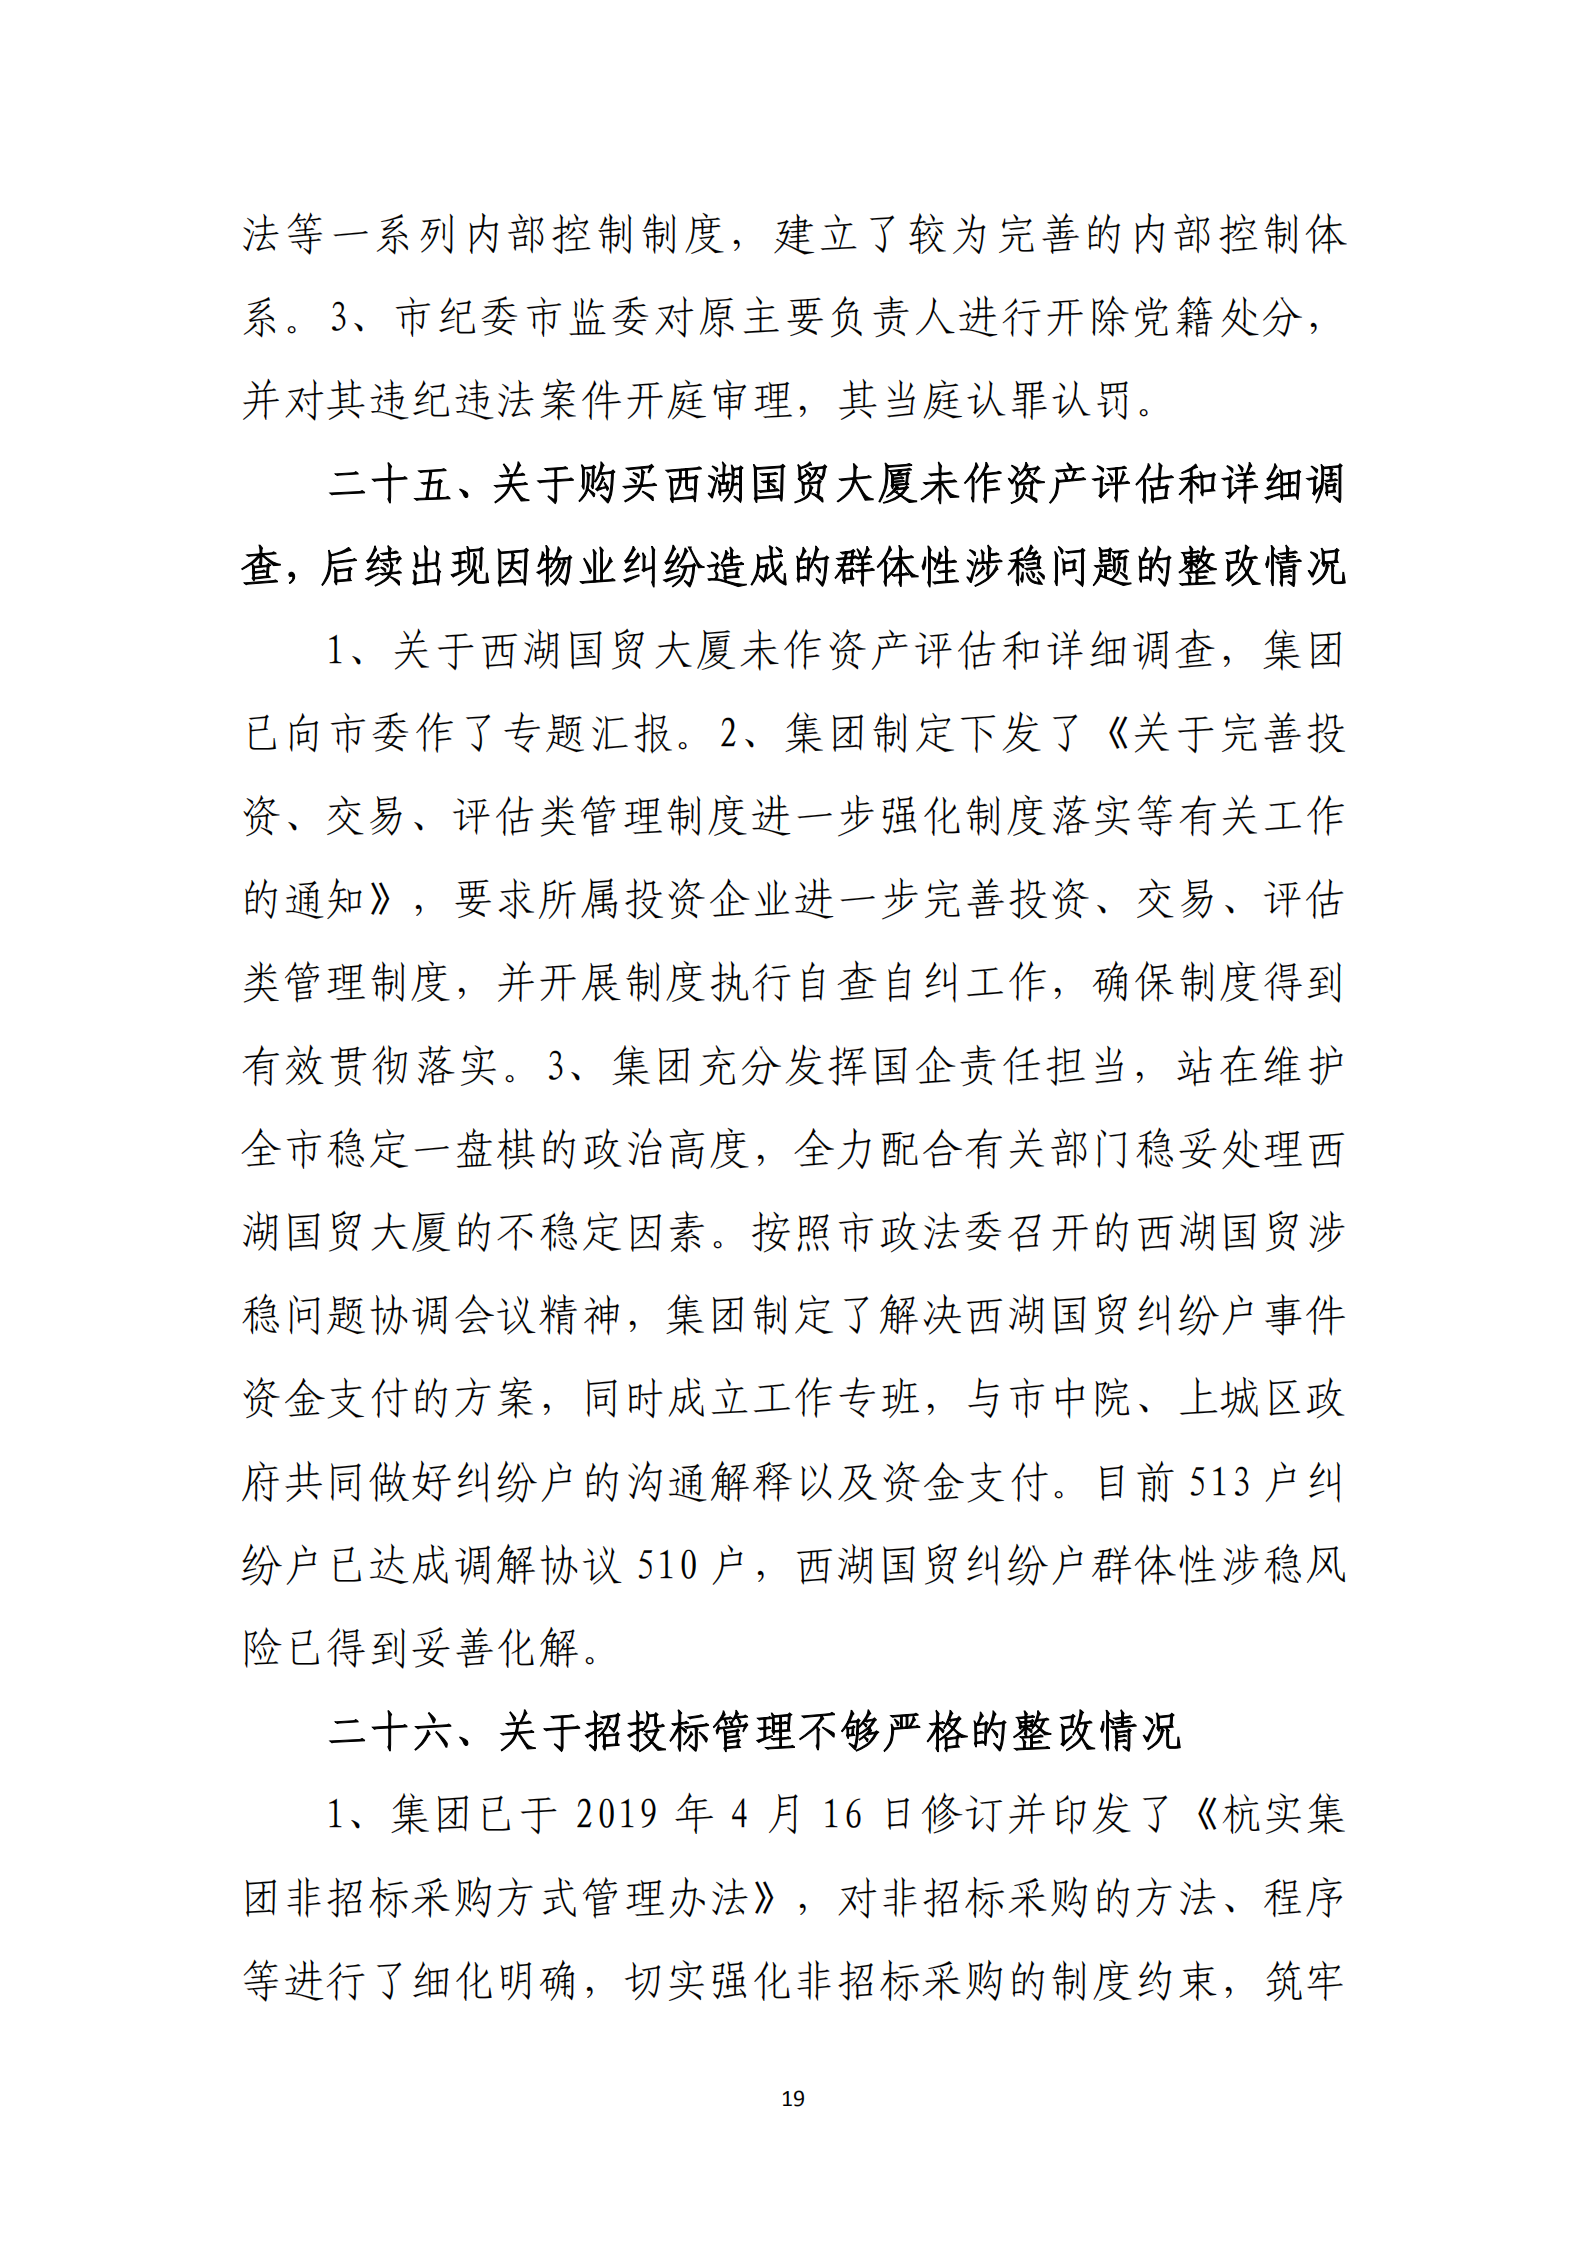 大阳城集团娱乐游戏党委关于巡察整改情况的通报_18.png